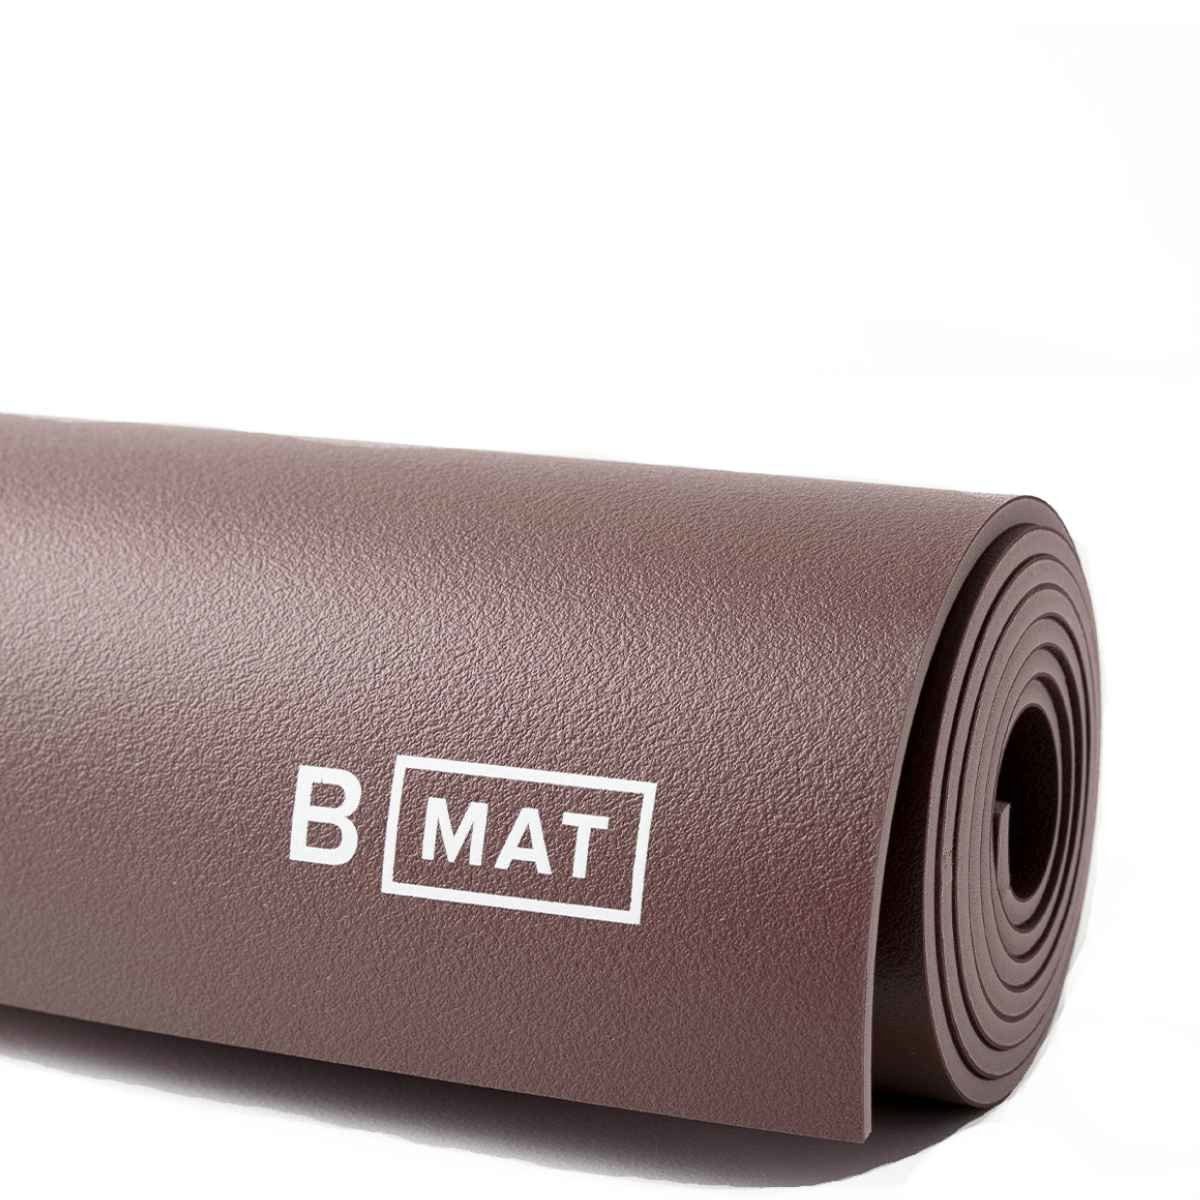 B Yoga Yogamatte »B Yoga Yogamatte B Mat Strong 6mm« (Kein Set, Kein Set),  Naturkautschuk, rutschfest, stoßdämpfend, pflegeleicht, hohe Qualität  online kaufen | OTTO